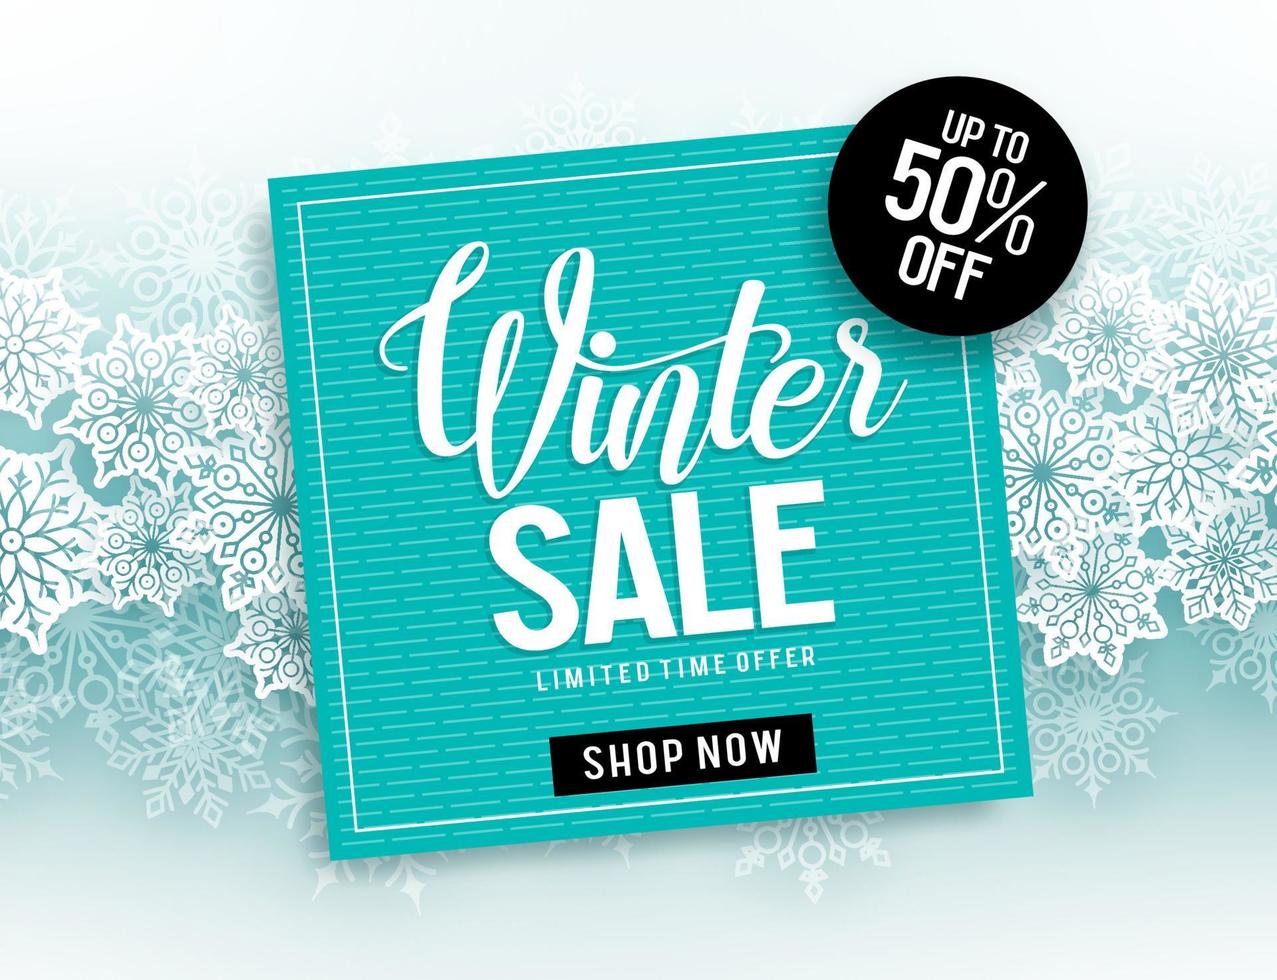 Winterschlussverkauf-Vektor-Banner-Design mit Verkaufstextpapier geschnitten hängend und weißem Schnee in blauem Hintergrund für saisonale Förderung. Vektor-Illustration. vektor